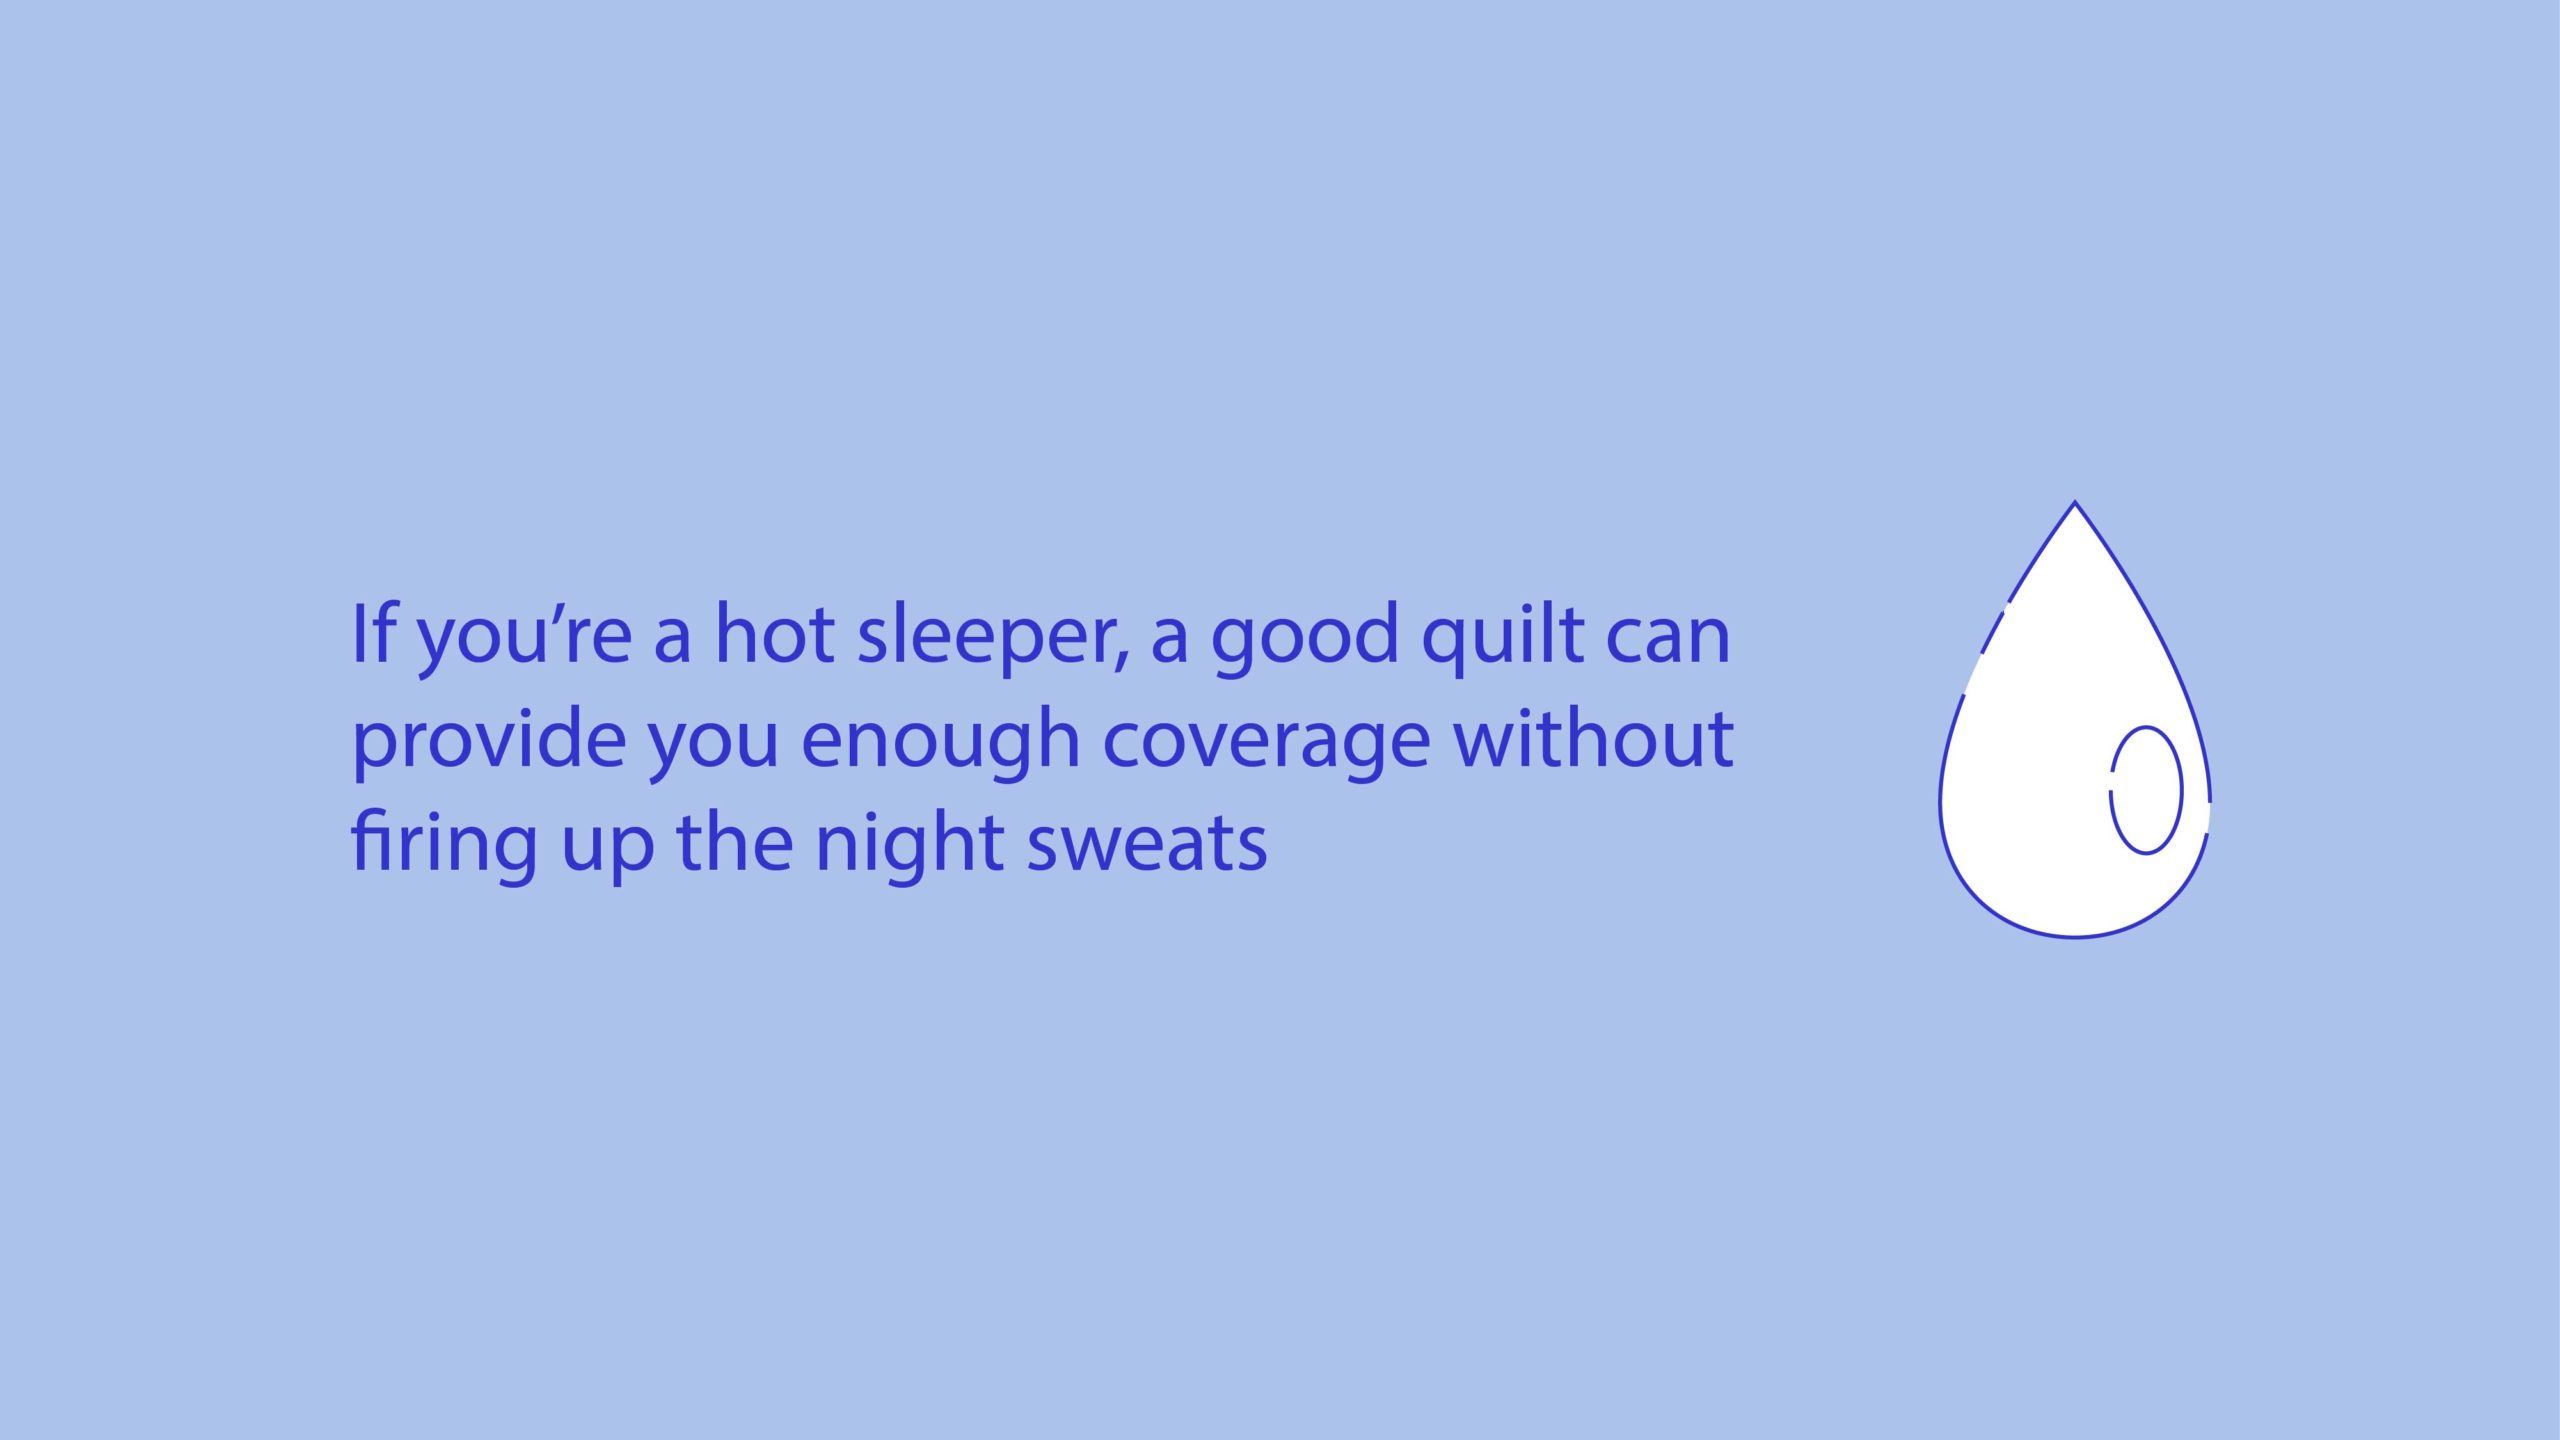 Quilt vs. Comforter